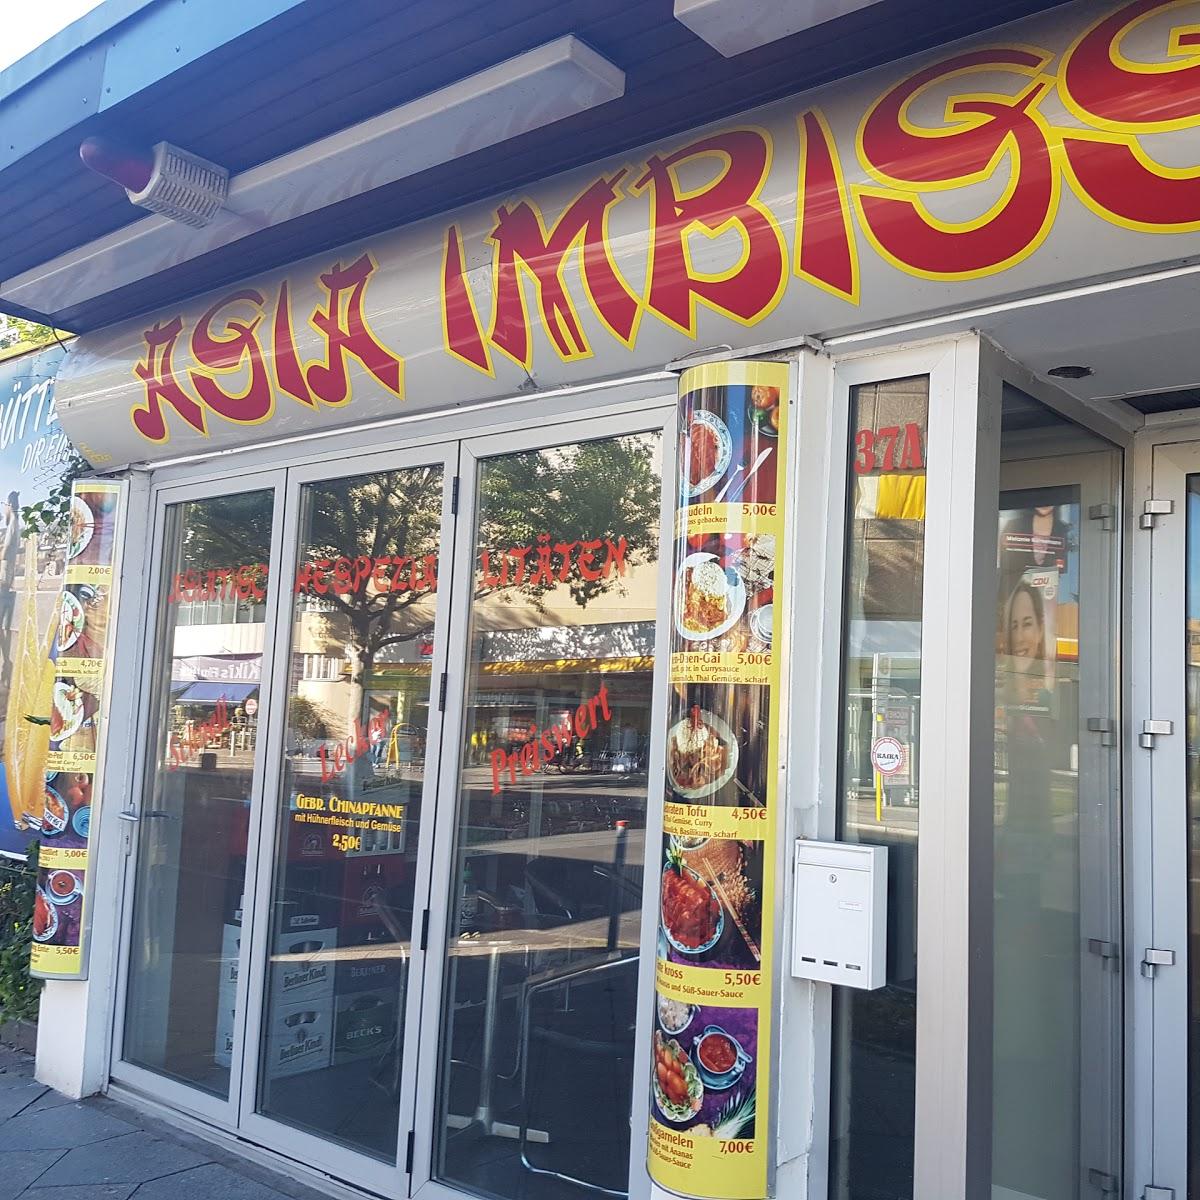 Restaurant "Asia Imbiss" in Berlin